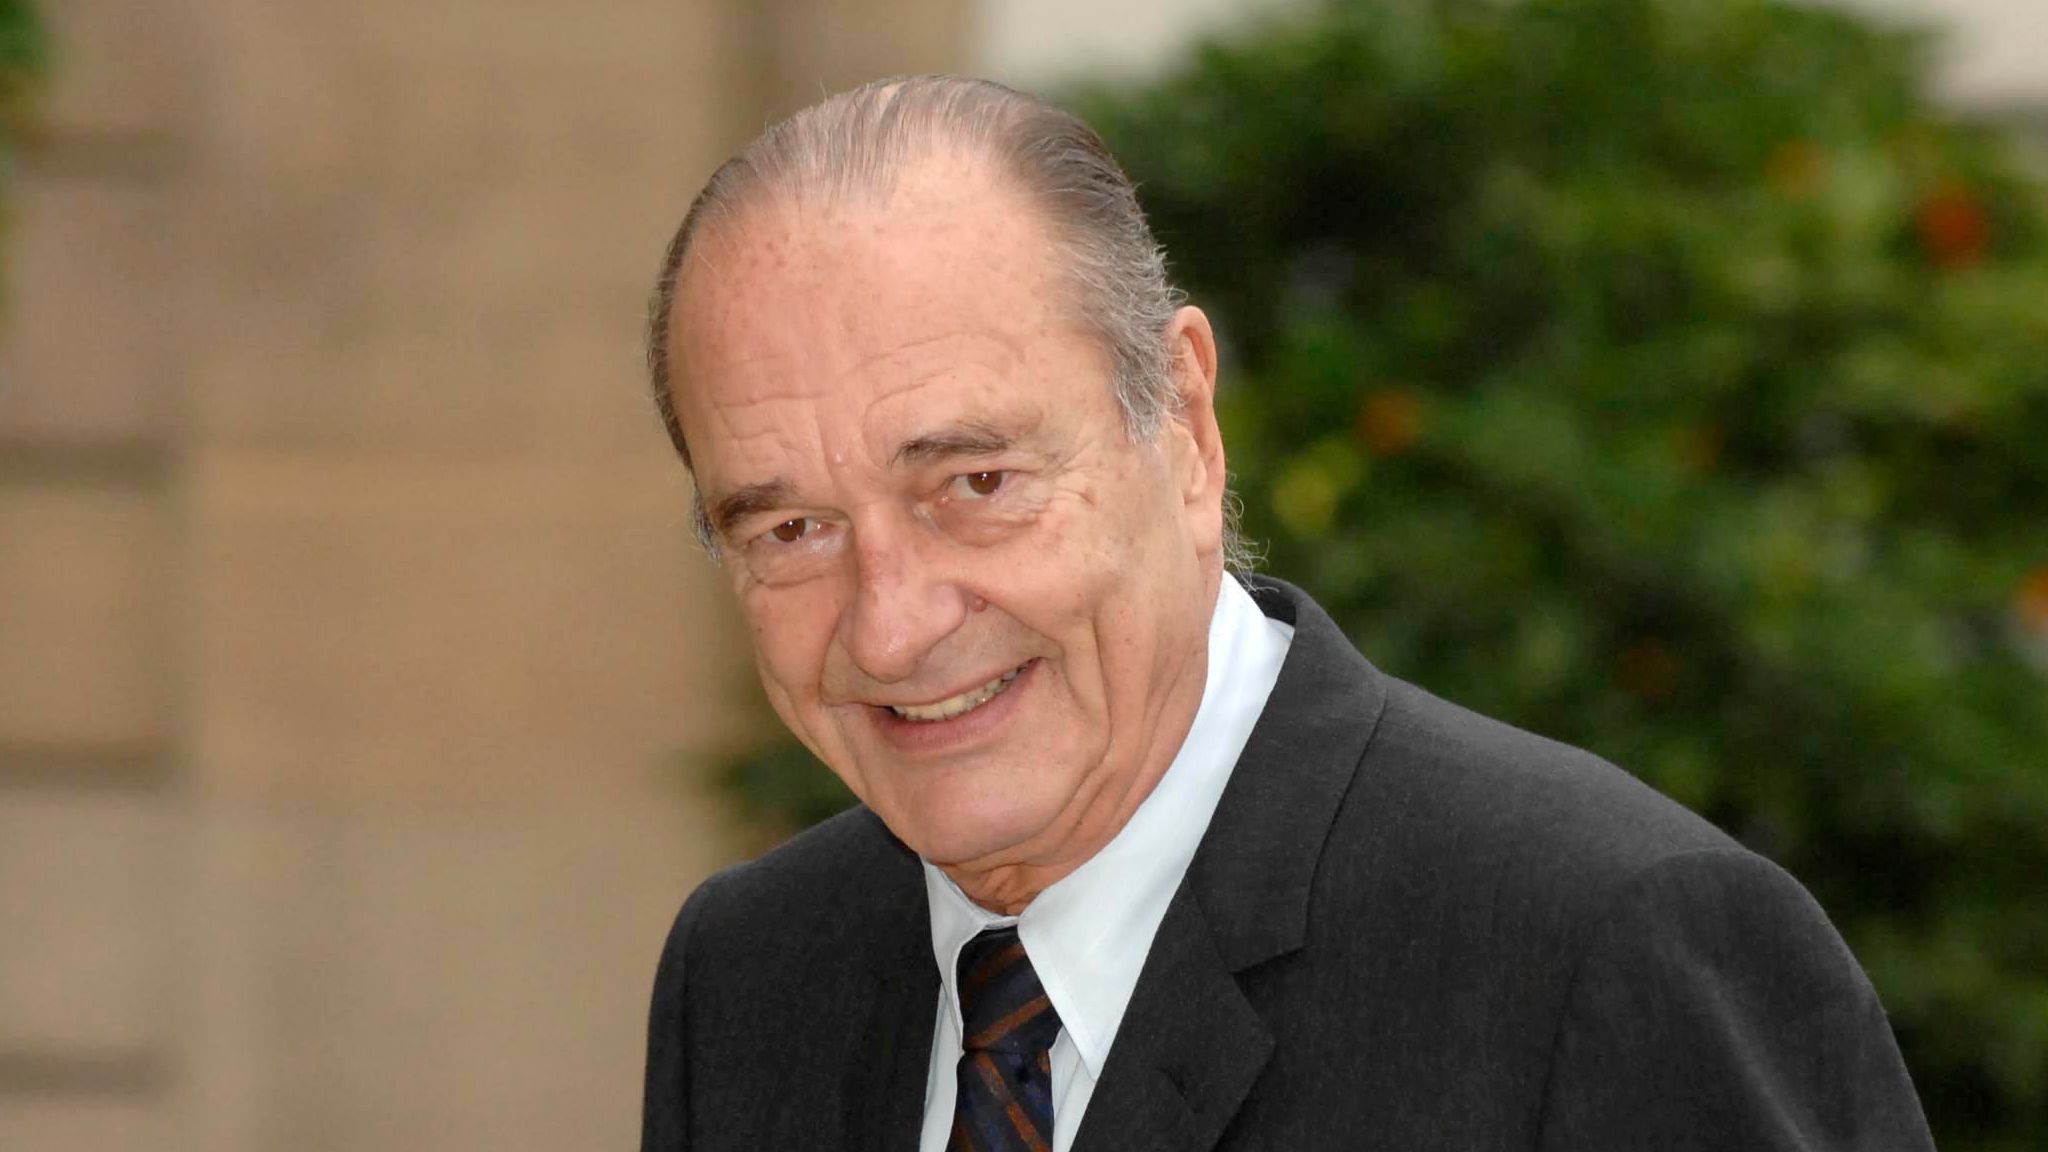 Jacques Chirac &quot;amoureux&quot; d'une journaliste : &quot;Ca a été une affaire importante&quot;